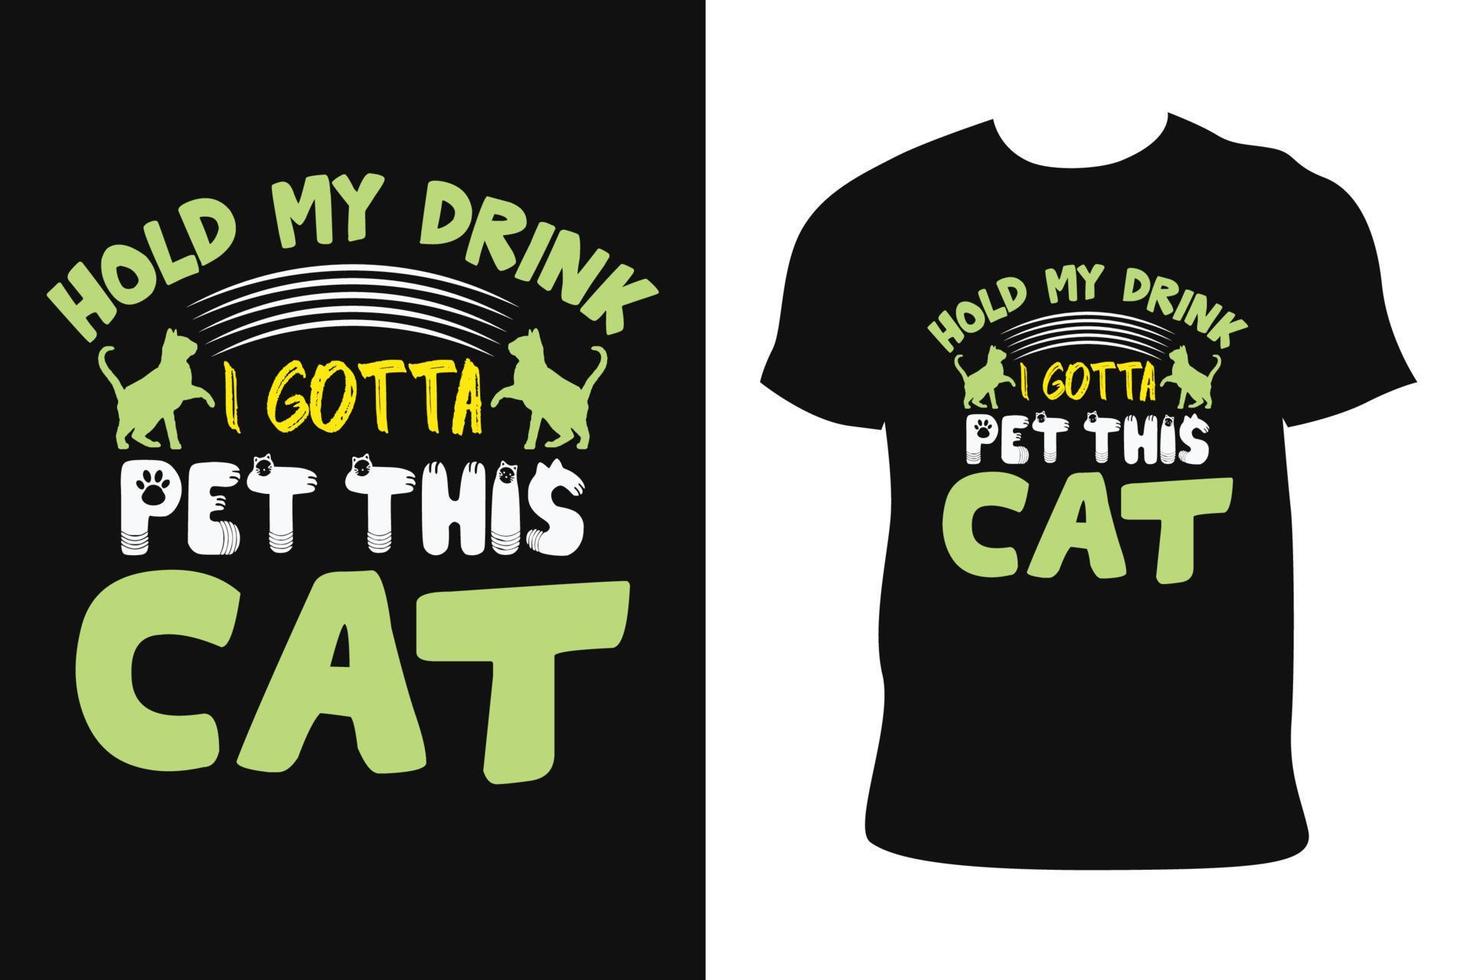 CAT T-SHIRT DESIGN. CAT T-SHIRT. cat t-shirt free Vector. vector